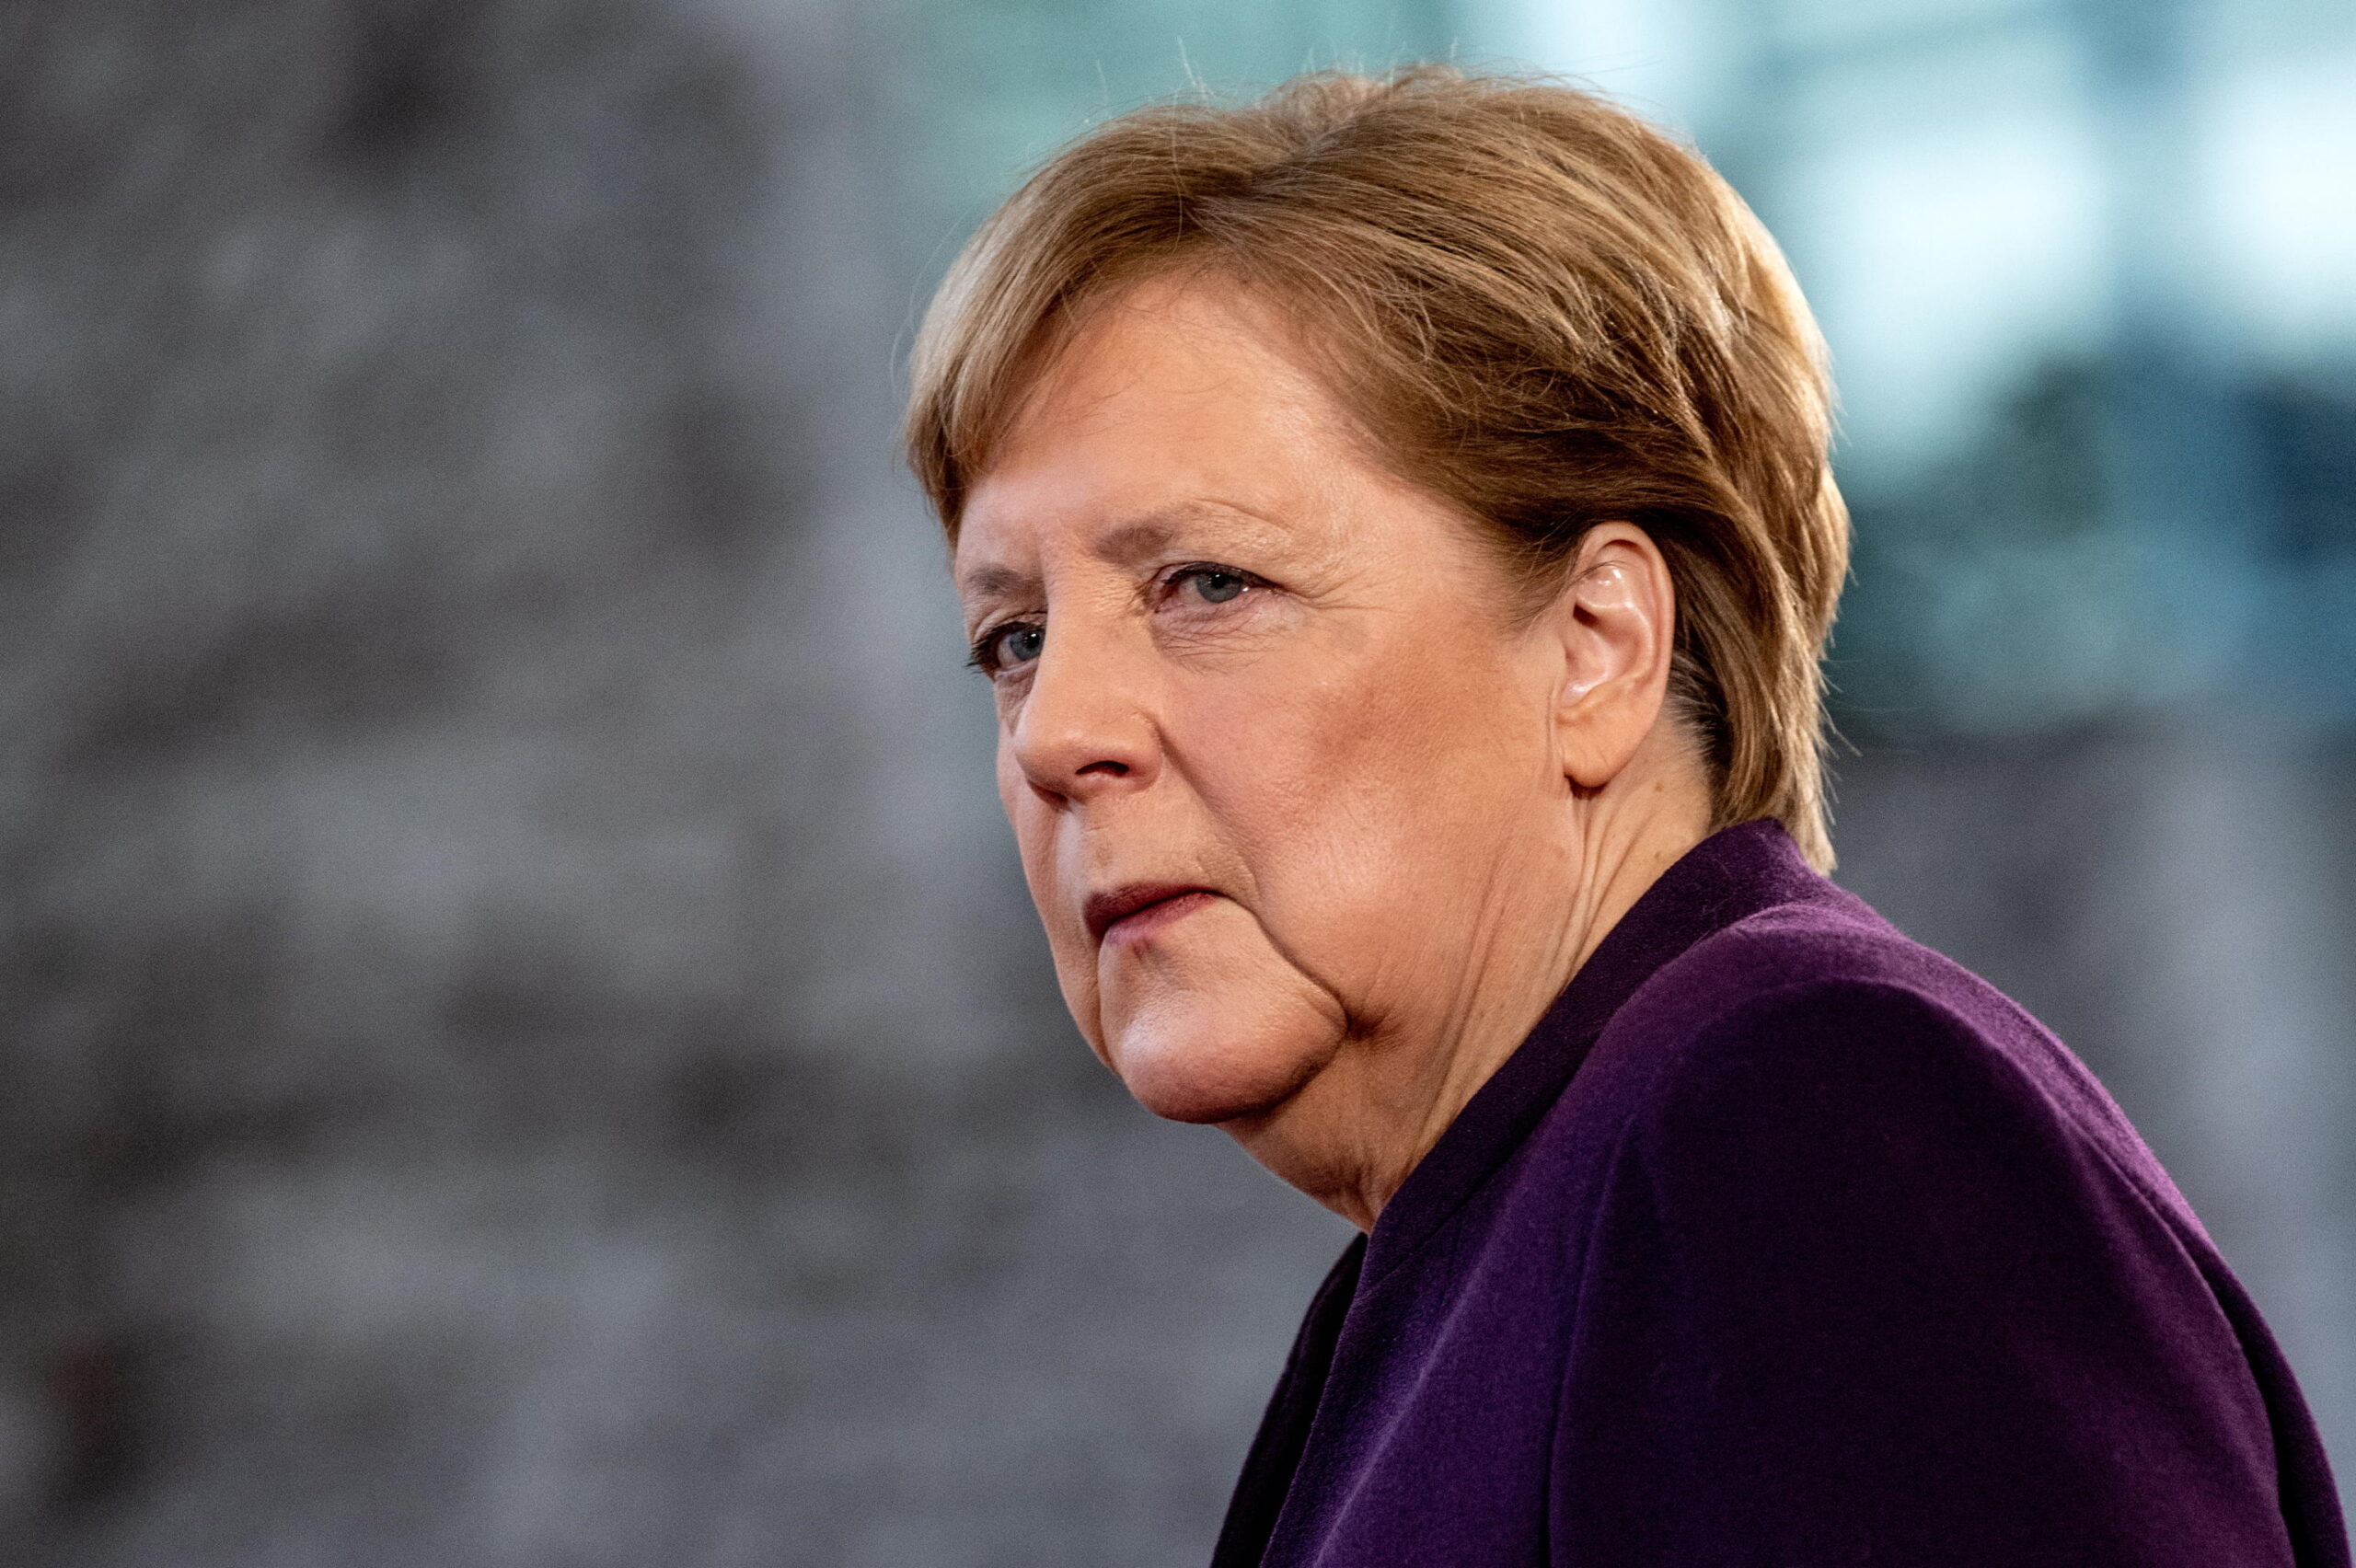 L’Ucraina, la Merkel e le bugie dalle gambe corte…